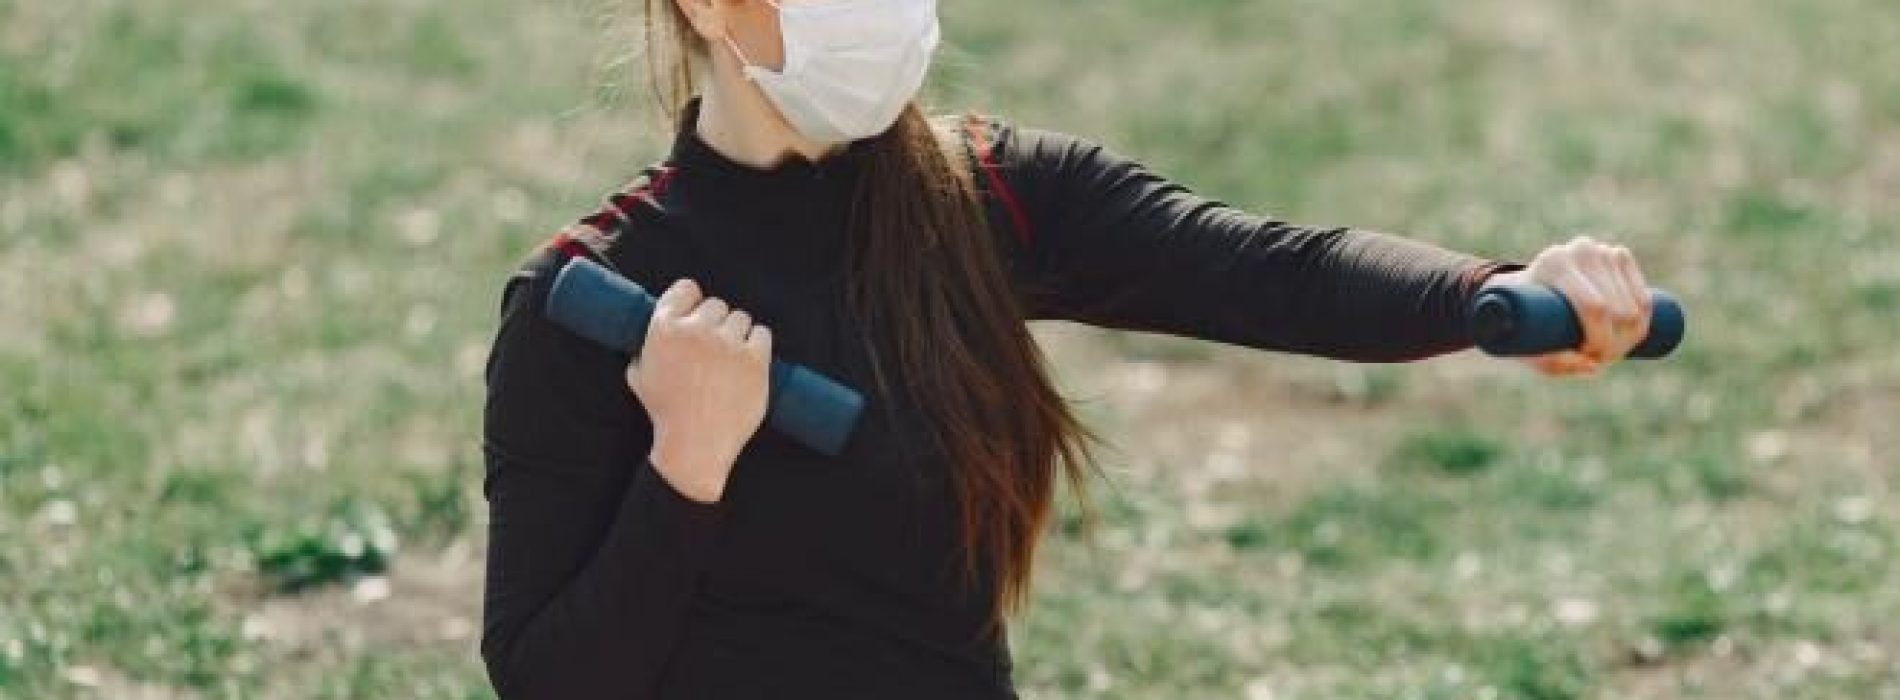 Trainen met gezichtsmaskers kan gevaarlijk zijn en dit is waarom